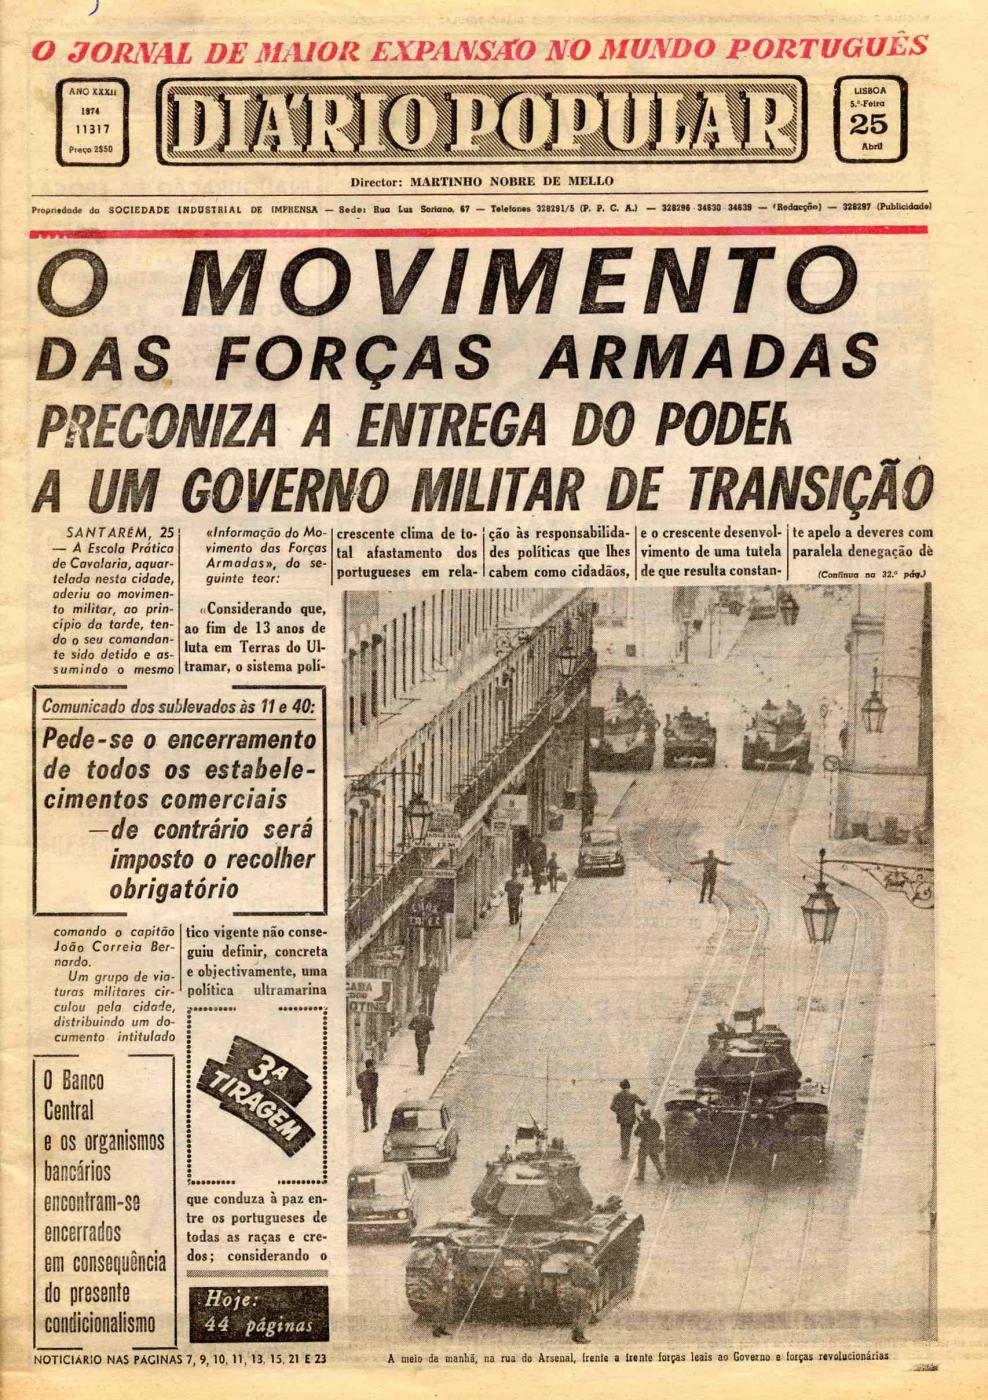 Página do Jornal Diário Popular dedicada à revolução de 25 de abril de 1974